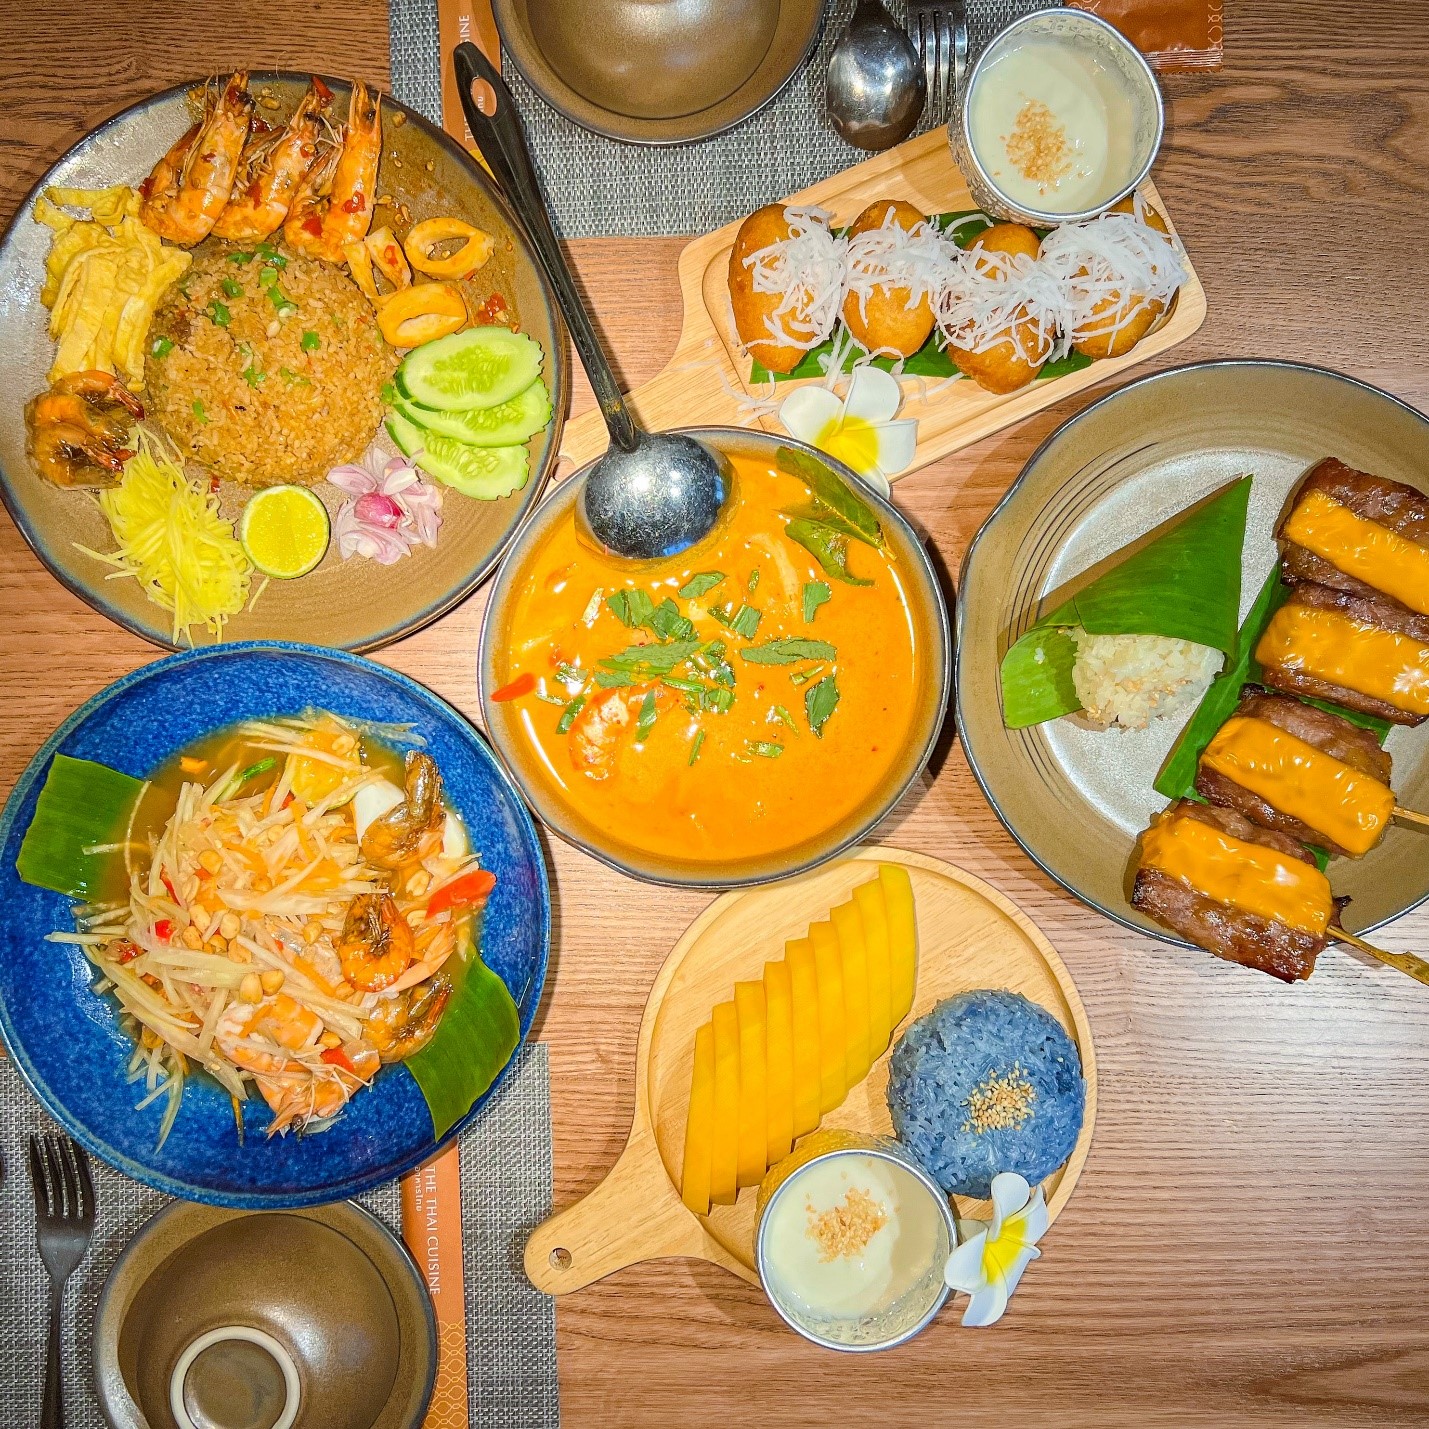 The Thai Cuisine nhà hàng Thái tại Đà Lạt